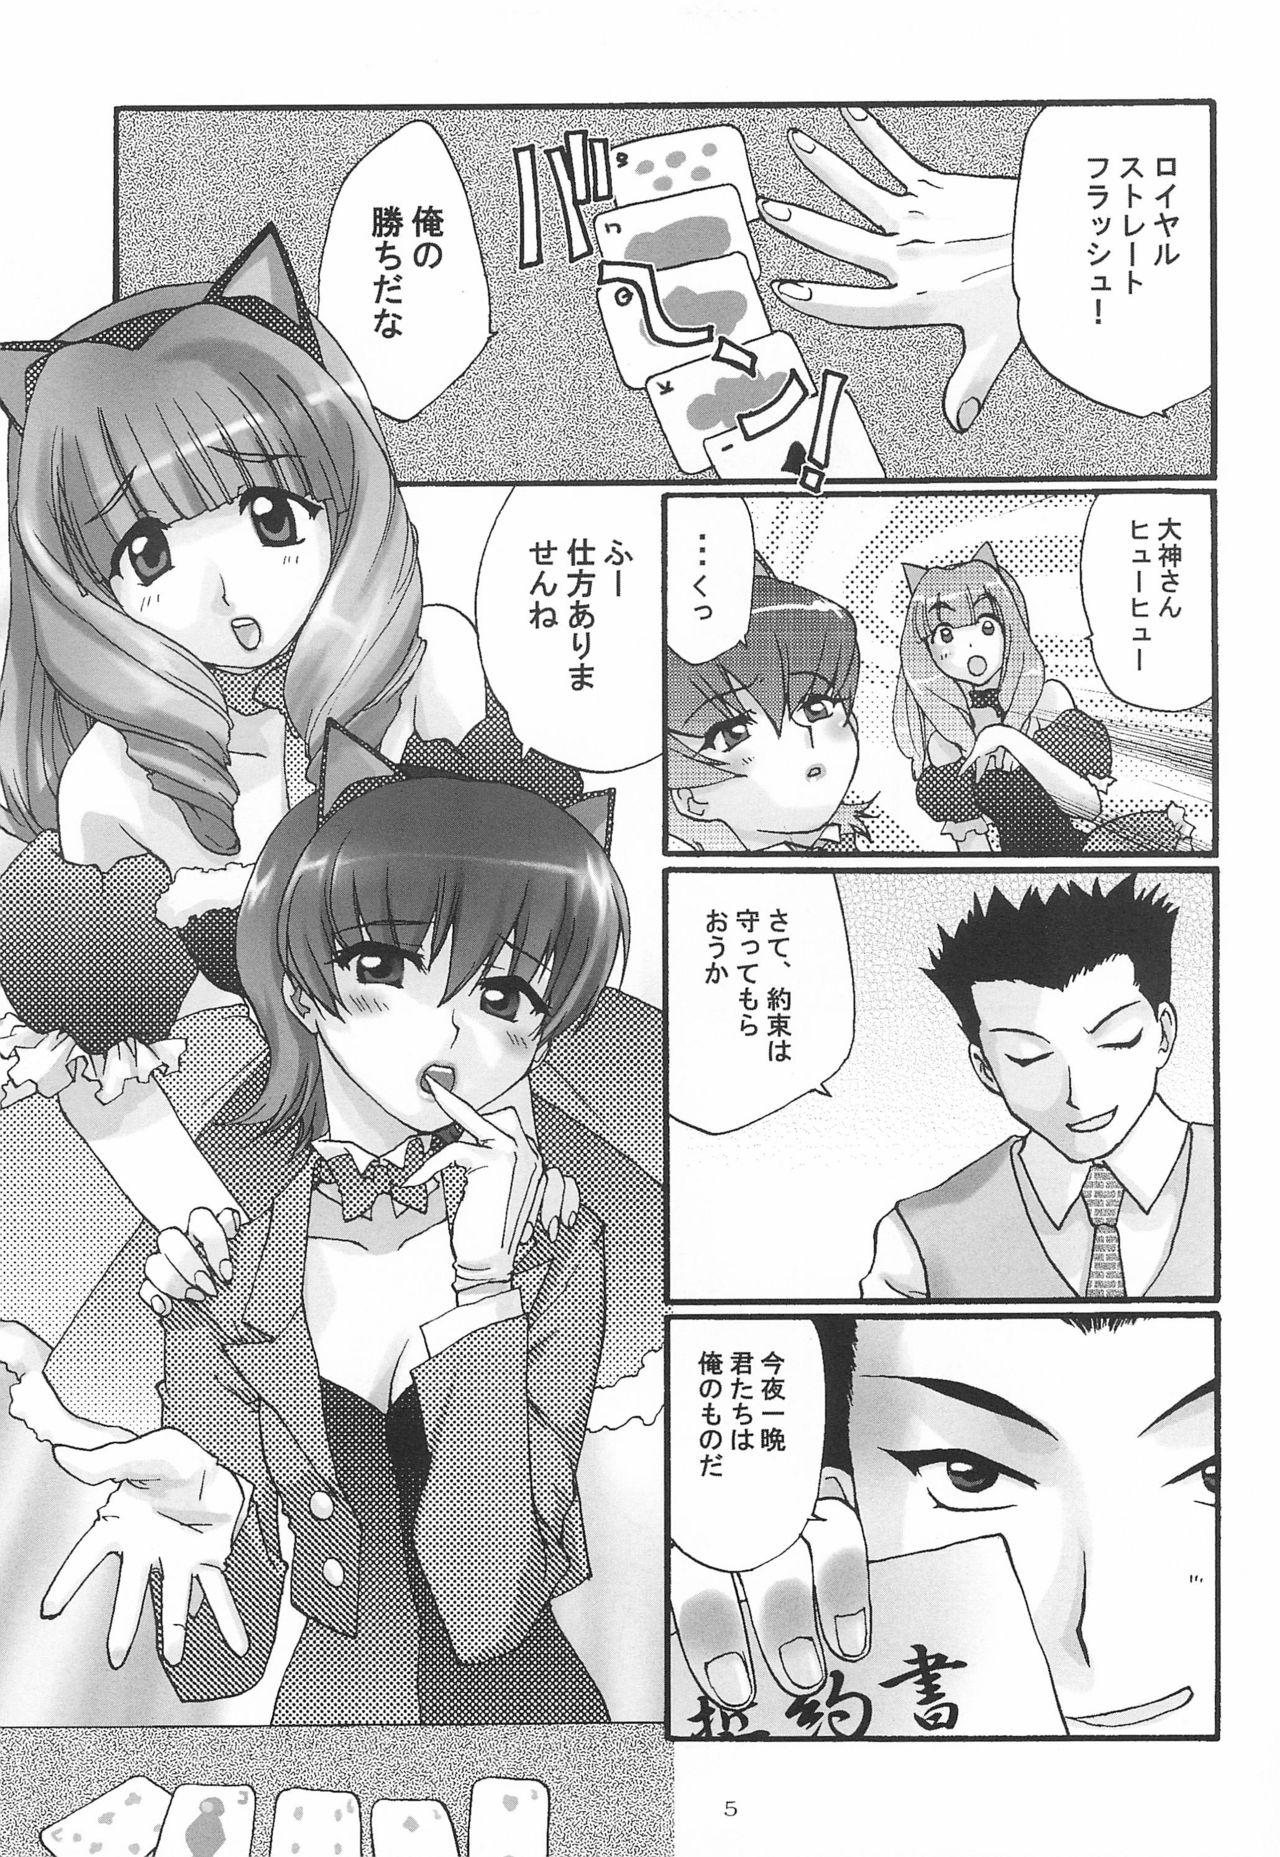 Flagra Alleluia - Sakura taisen | sakura wars Short Hair - Page 7